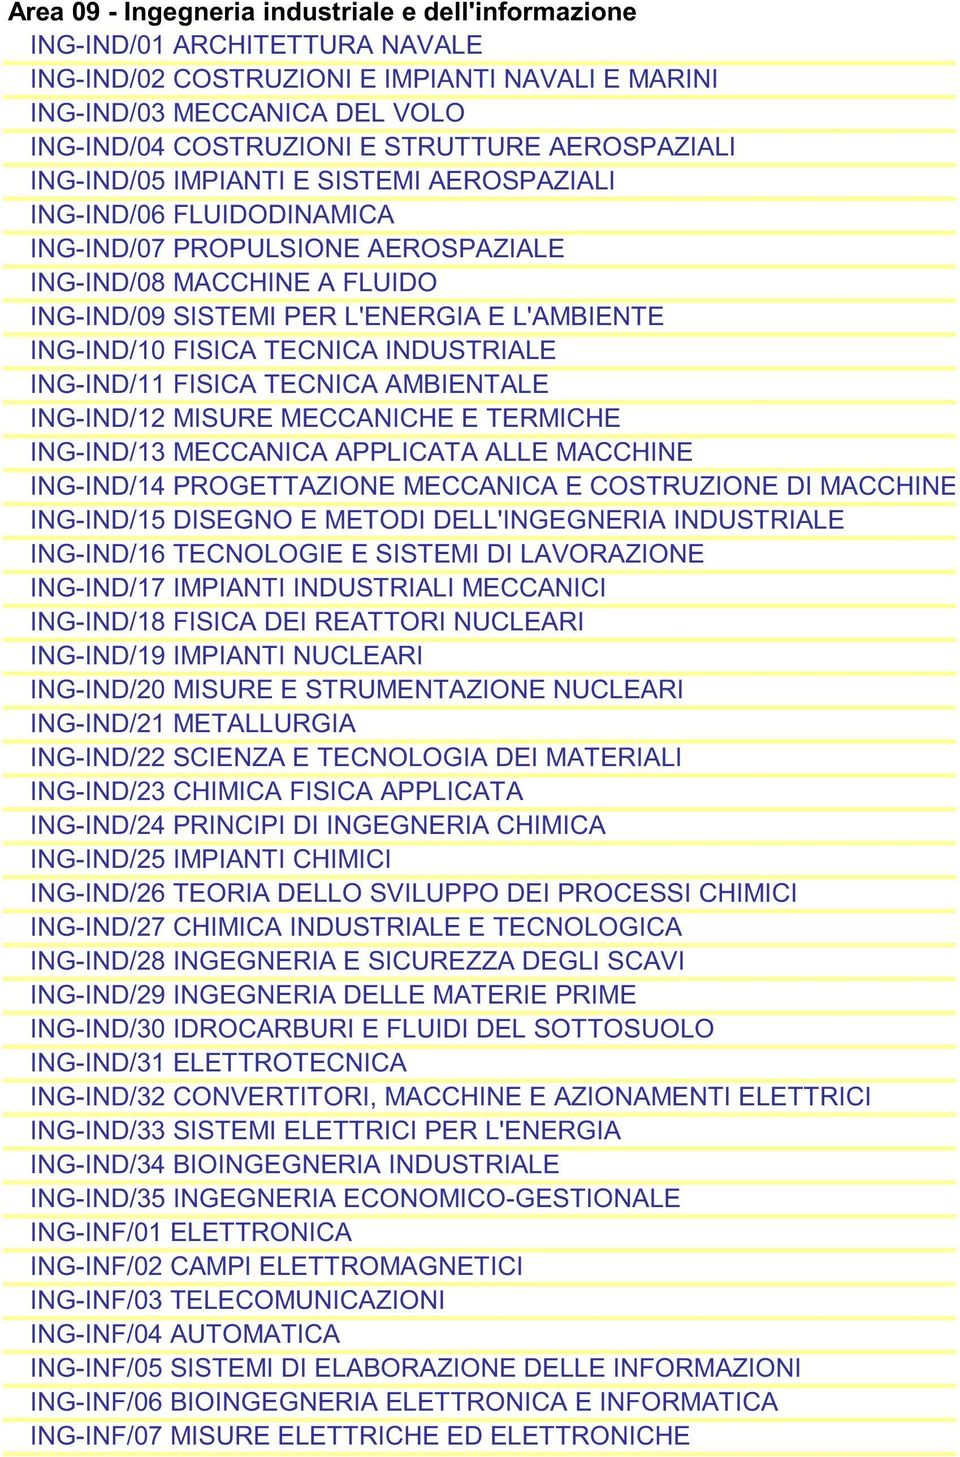 ING-IND/10 FISICA TECNICA INDUSTRIALE ING-IND/11 FISICA TECNICA AMBIENTALE ING-IND/12 MISURE MECCANICHE E TERMICHE ING-IND/13 MECCANICA APPLICATA ALLE MACCHINE ING-IND/14 PROGETTAZIONE MECCANICA E